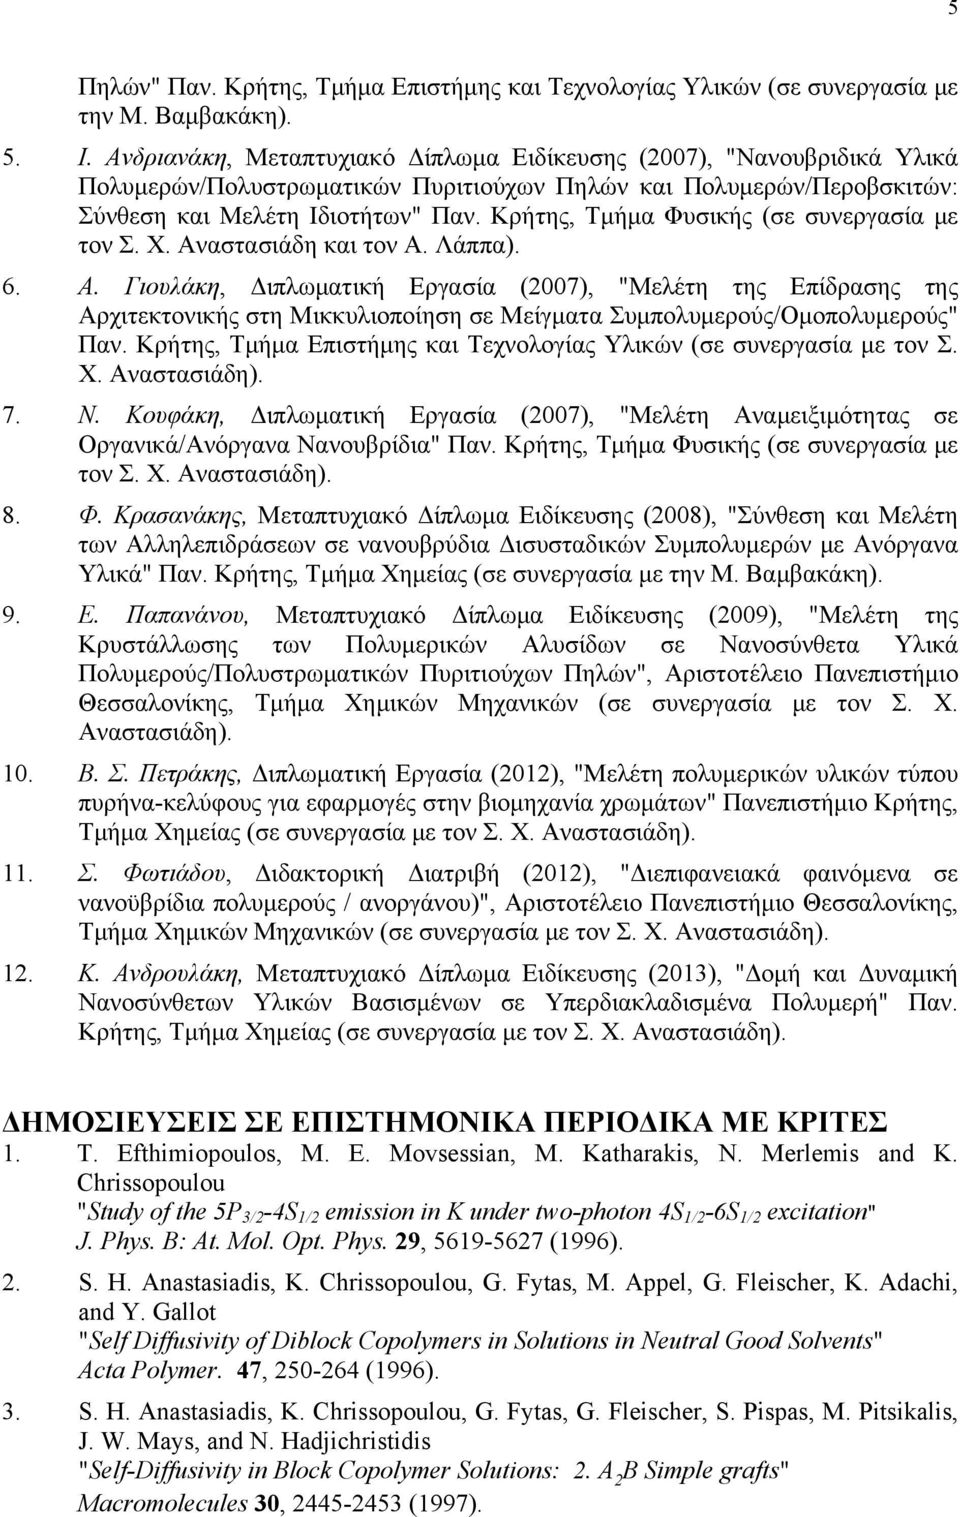 Κρήτης, Τμήμα Φυσικής (σε συνεργασία με τον Σ. Χ. Αναστασιάδη και τον Α. Λάππα). 6. Α. Γιουλάκη, Διπλωματική Εργασία (2007), "Μελέτη της Επίδρασης της Αρχιτεκτονικής στη Μικκυλιοποίηση σε Μείγματα Συμπολυμερούς/Ομοπολυμερούς" Παν.